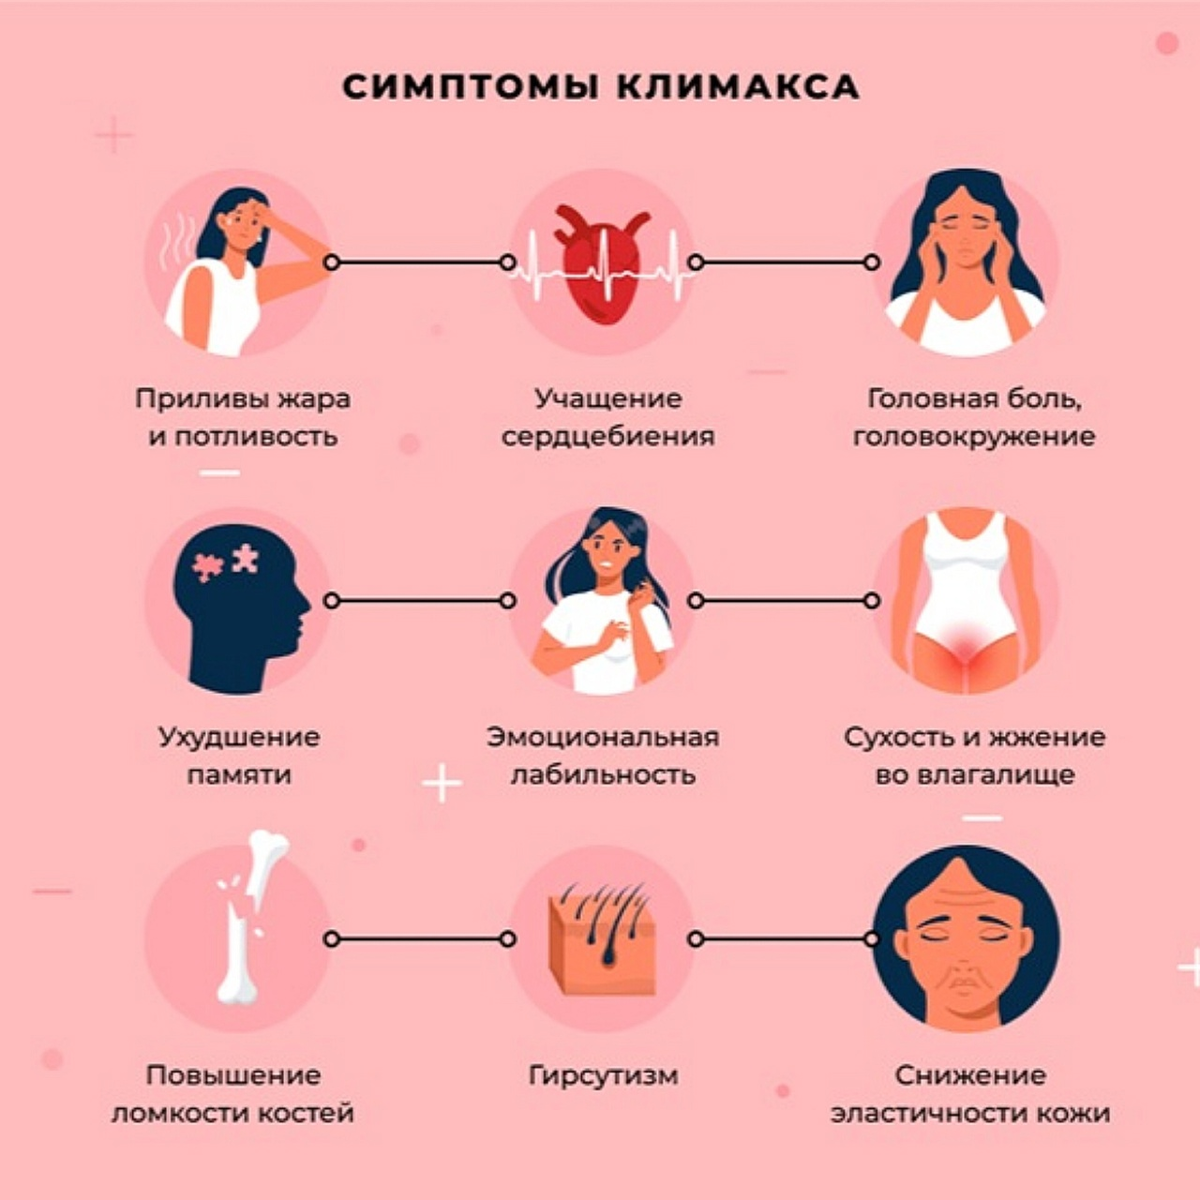 Сексуальность и возраст, как совместить? | Медицинский центр в Челябинске